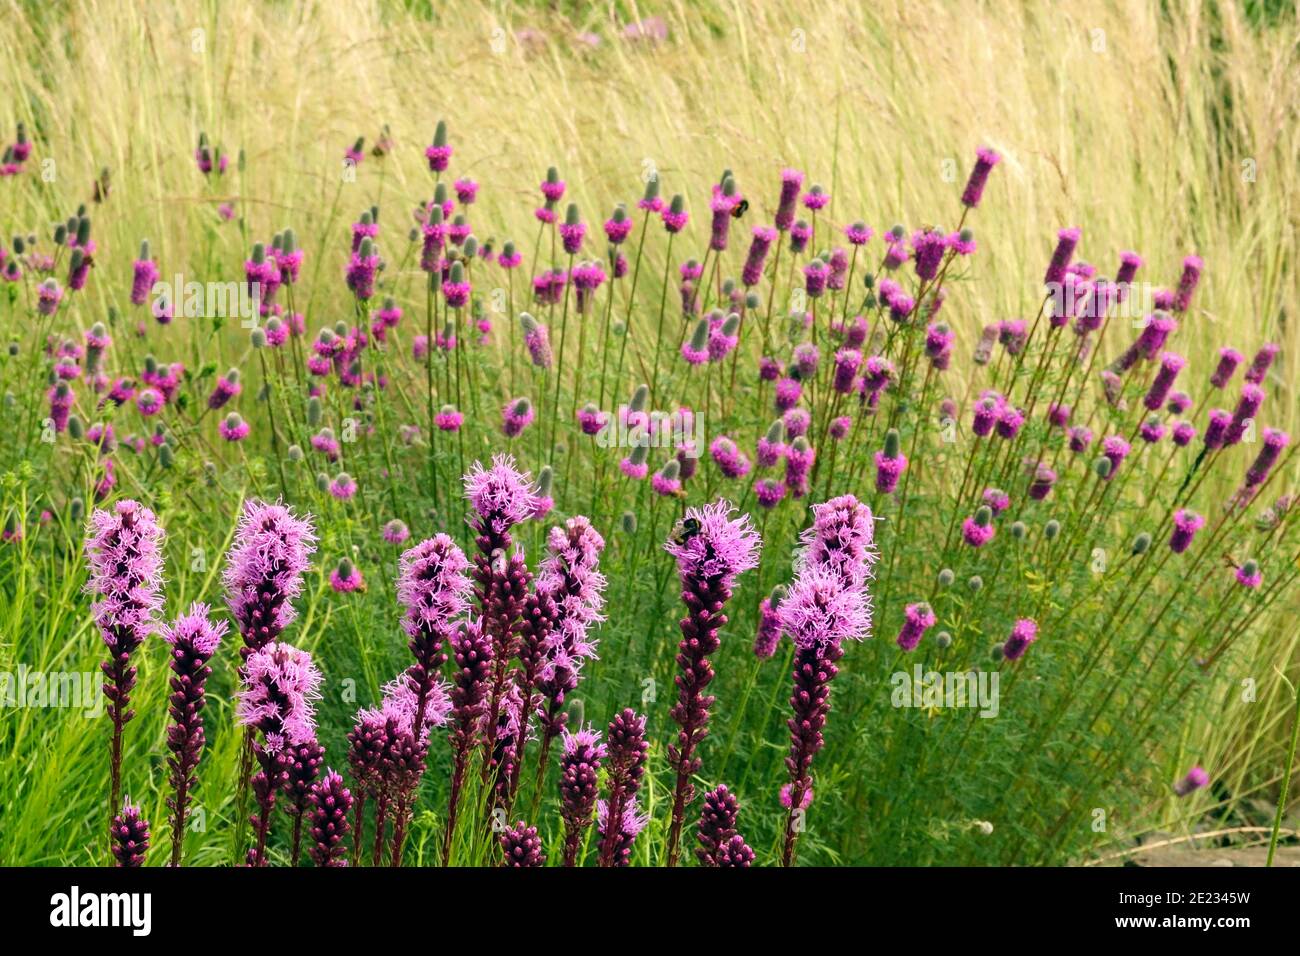 Fleurs violettes Liatris floraison au début de l'été jardin prairie prairie paysage herbes plantes herbacées Dalea purpurea Stipa tenuissima floraison Banque D'Images